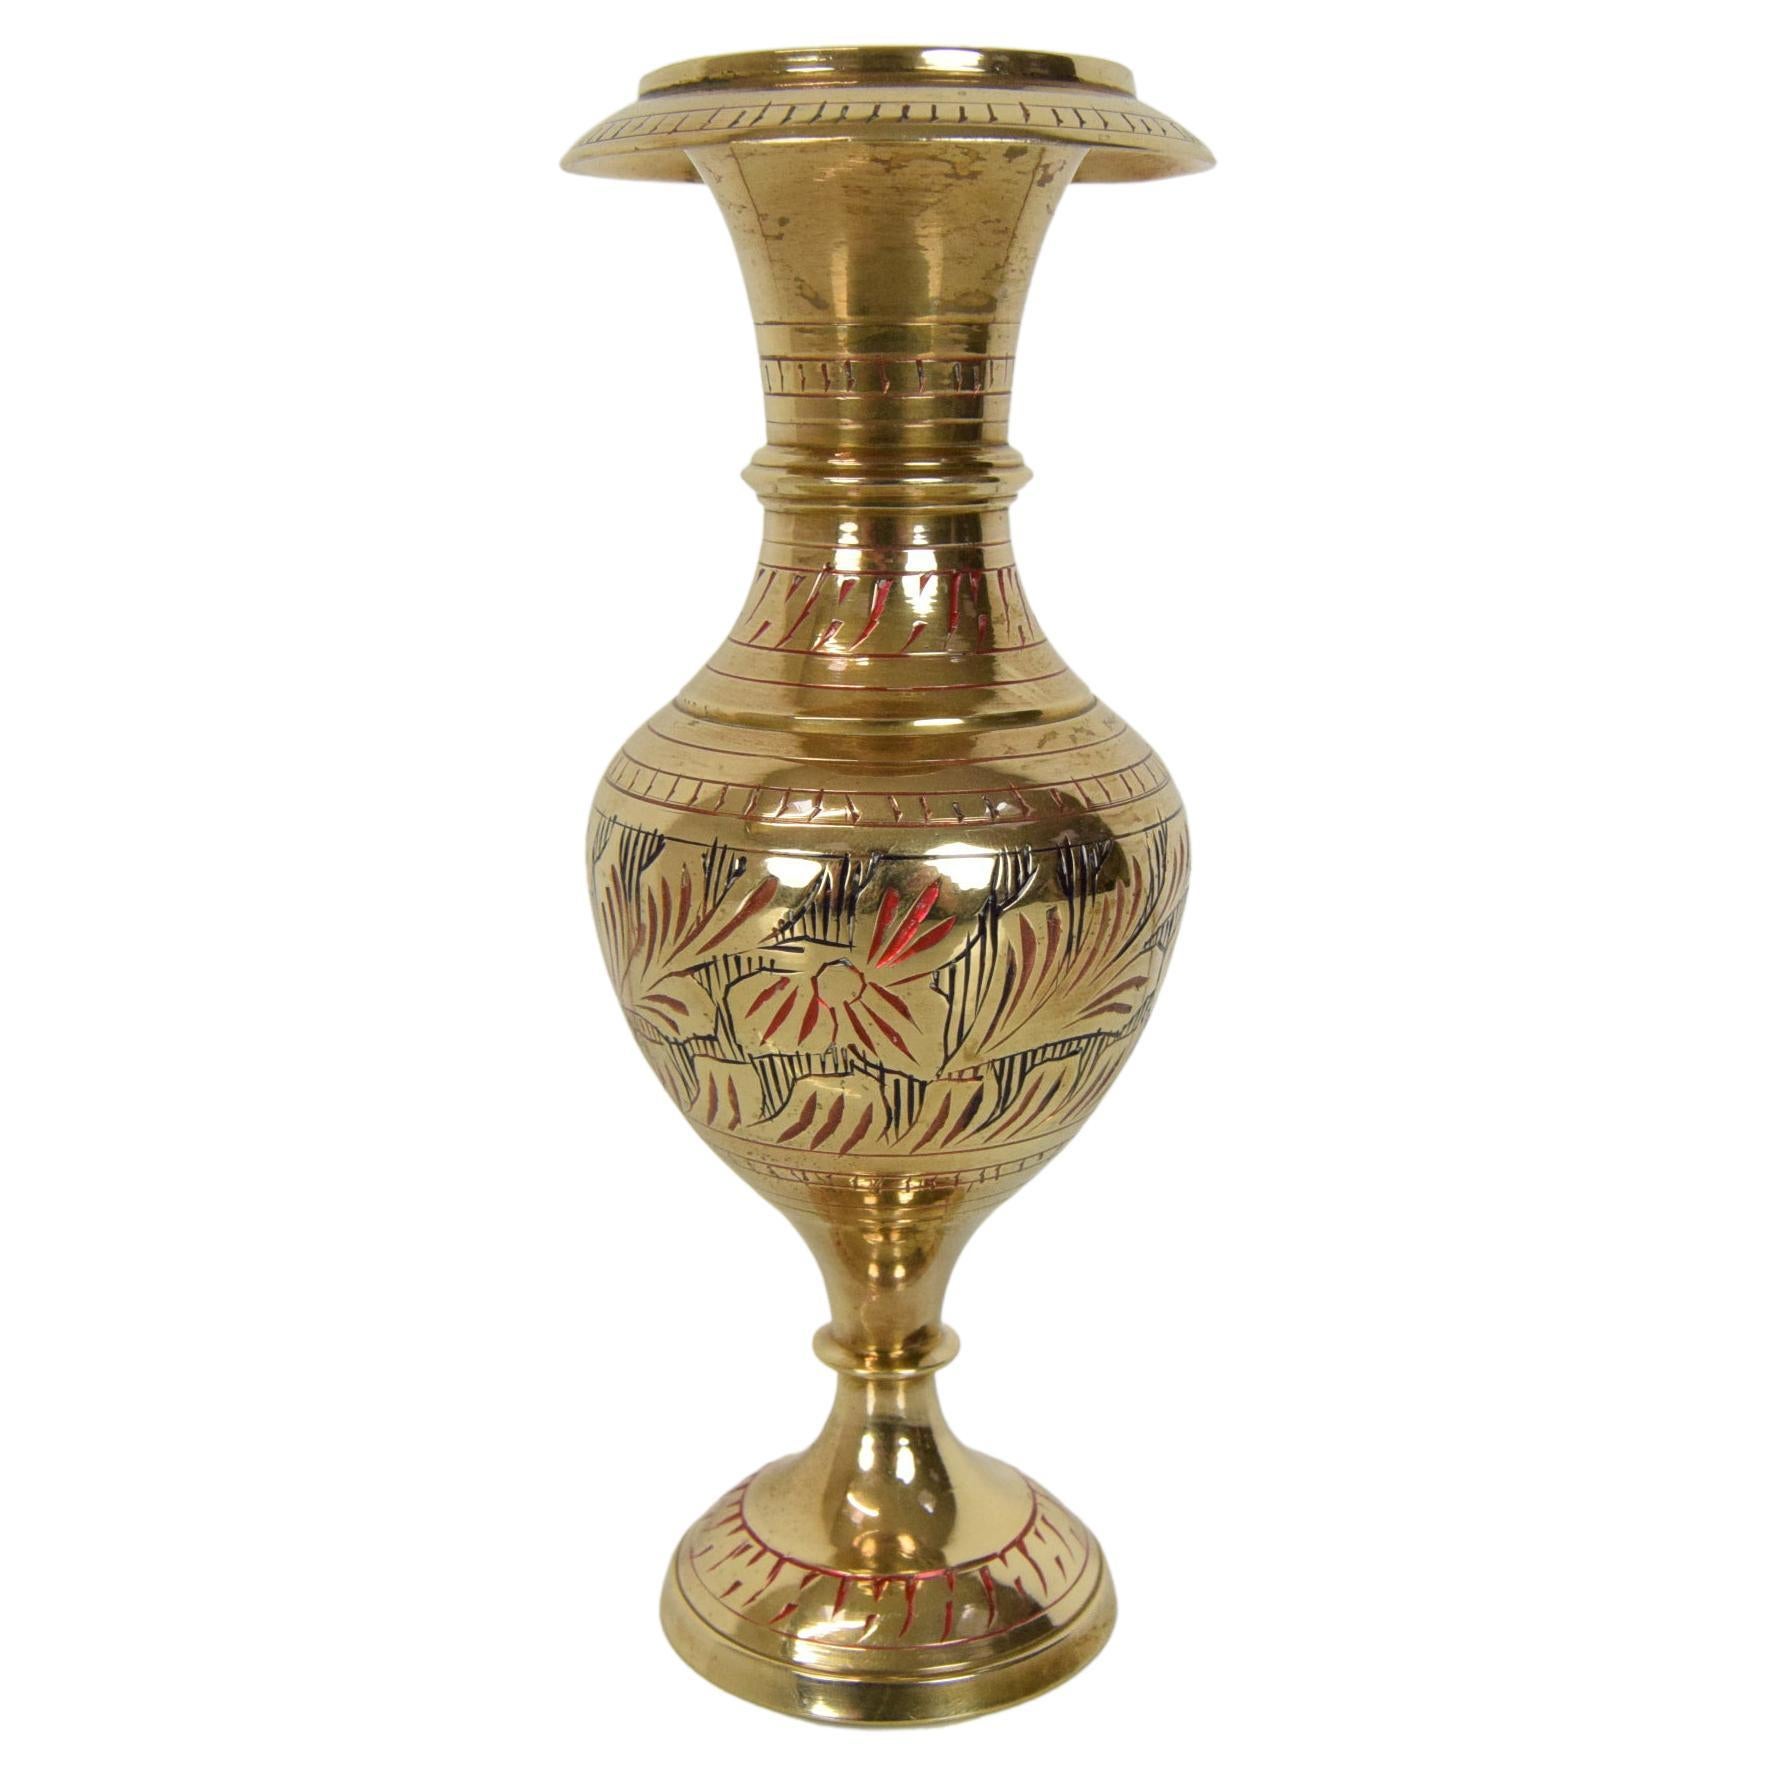 Details about   Vintage Brass Vase Solid Brass Metal Hand Carved Flower & Leaves Vase 